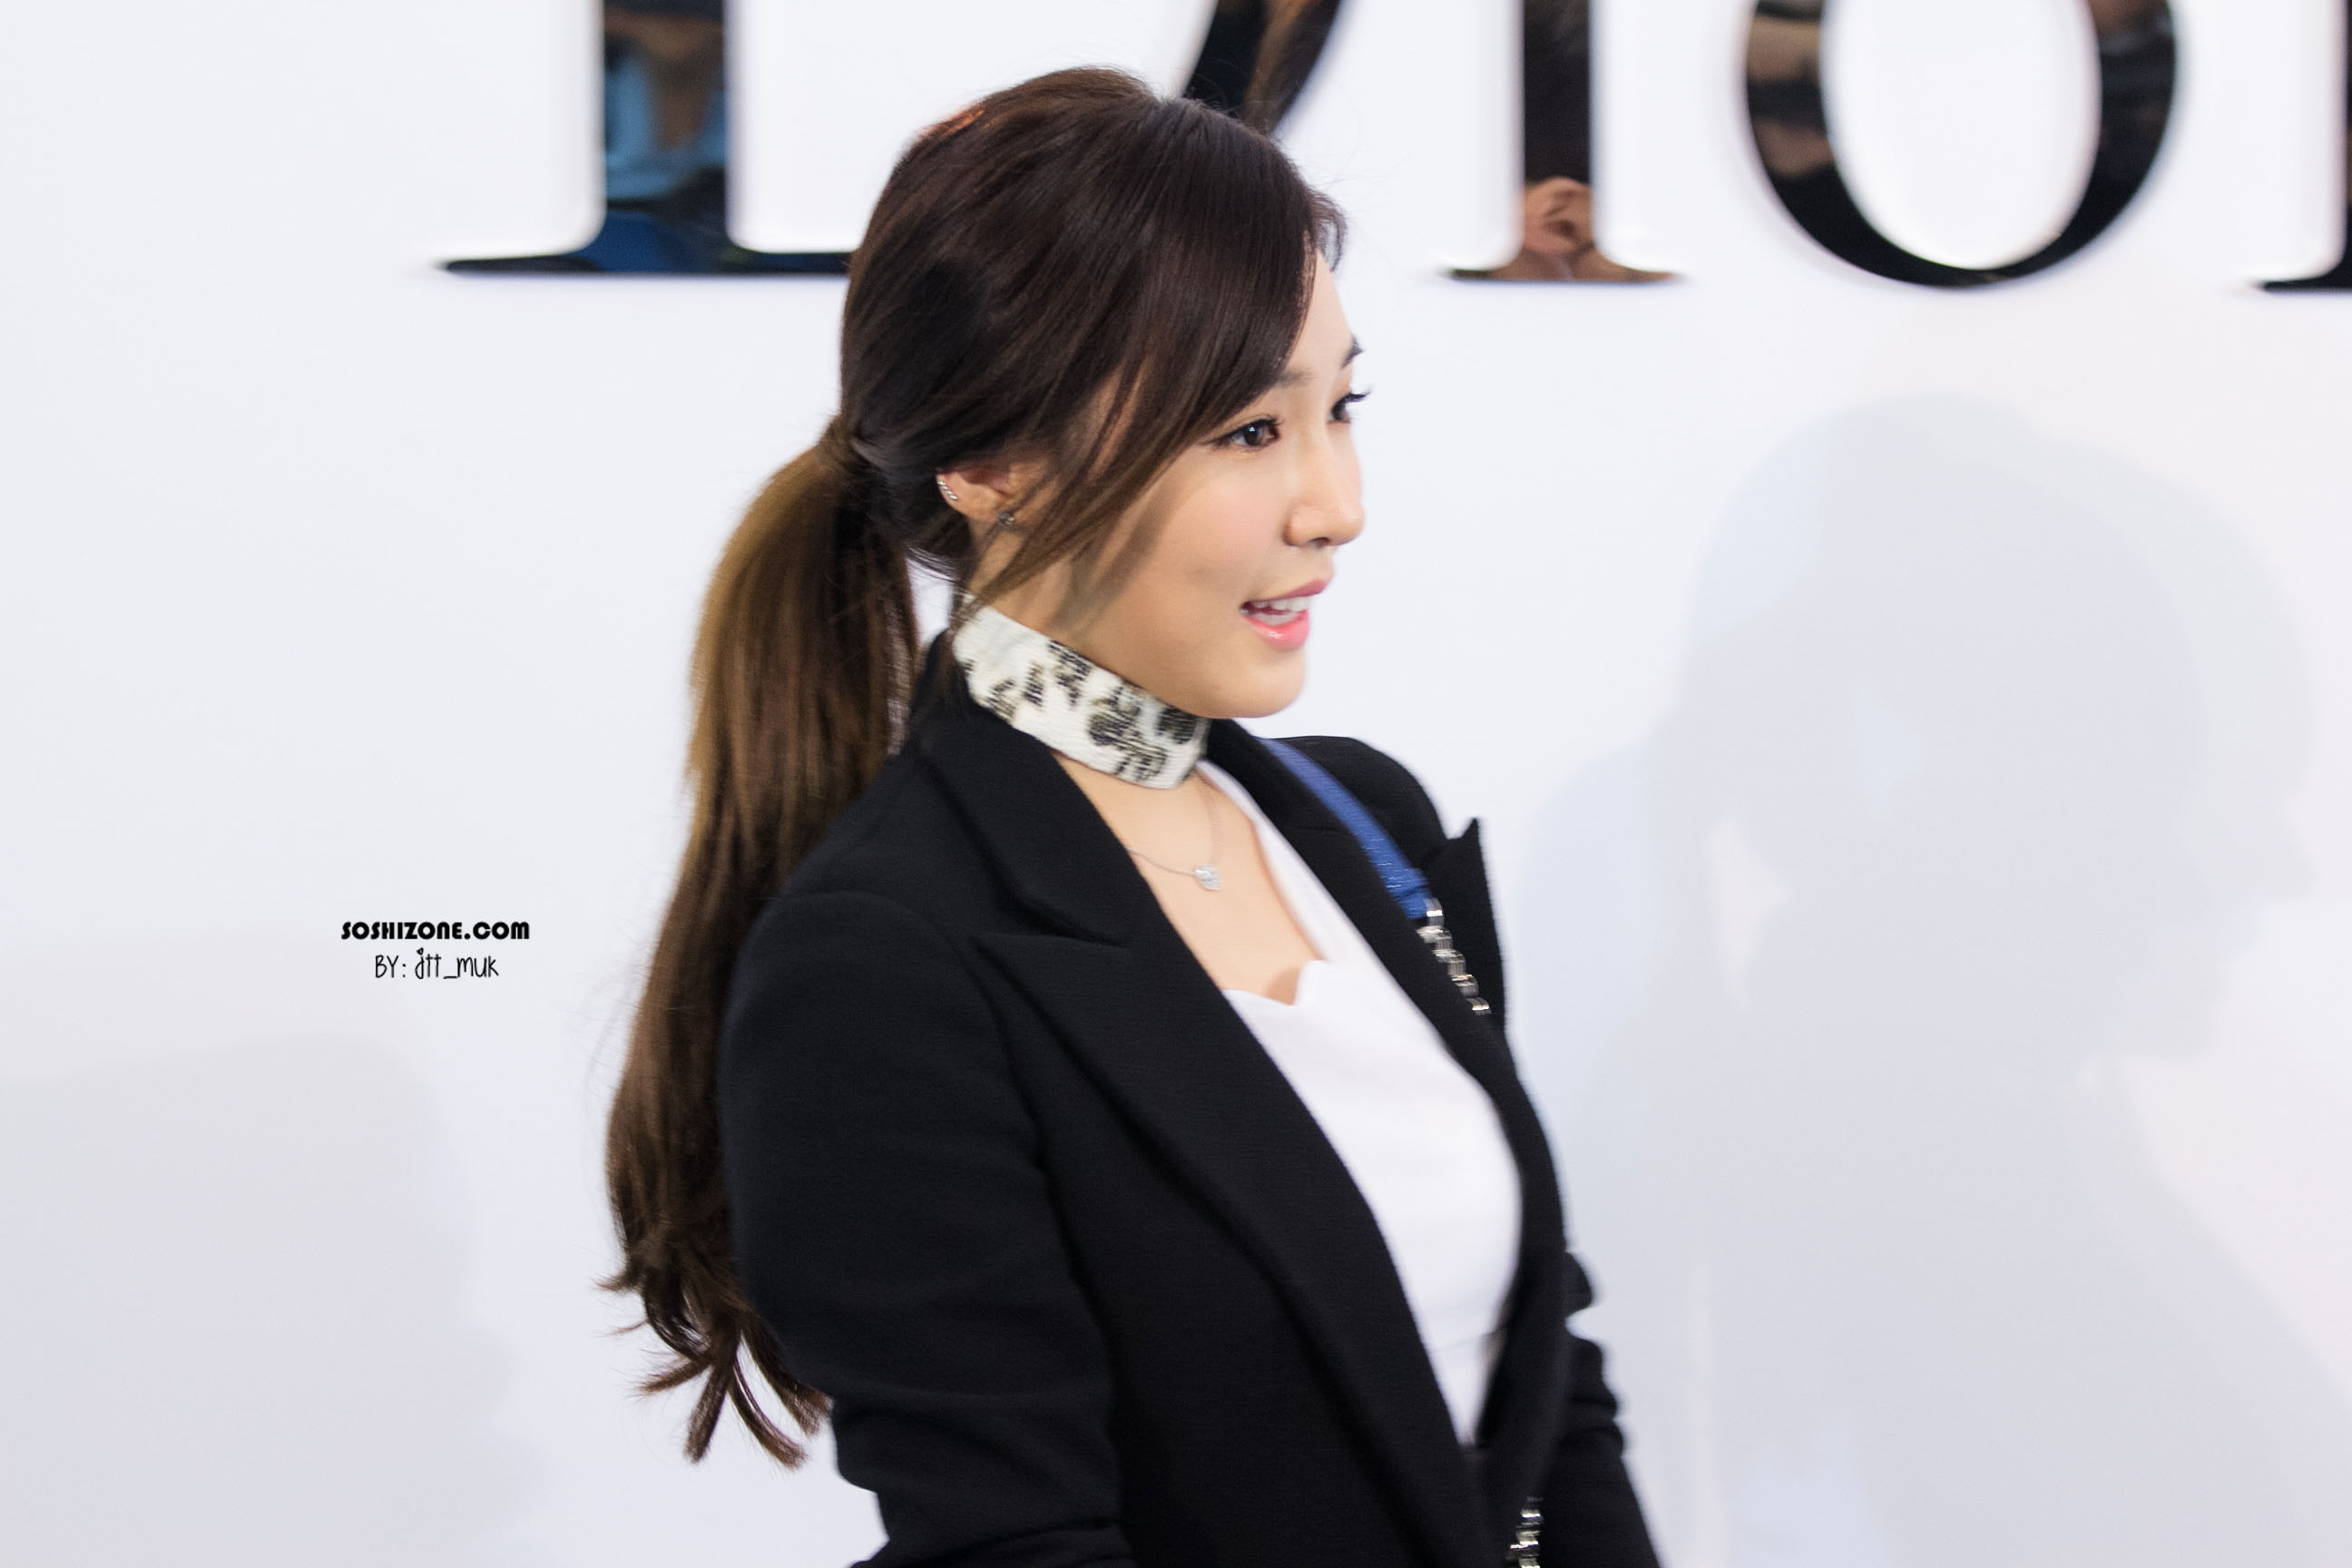 [PIC][17-02-2016]Tiffany khởi hành đi Thái Lan để tham dự sự kiện khai trương chi nhánh của thương hiệu "Christian Dior" vào hôm nay - Page 13 2251A8395728D32D057824